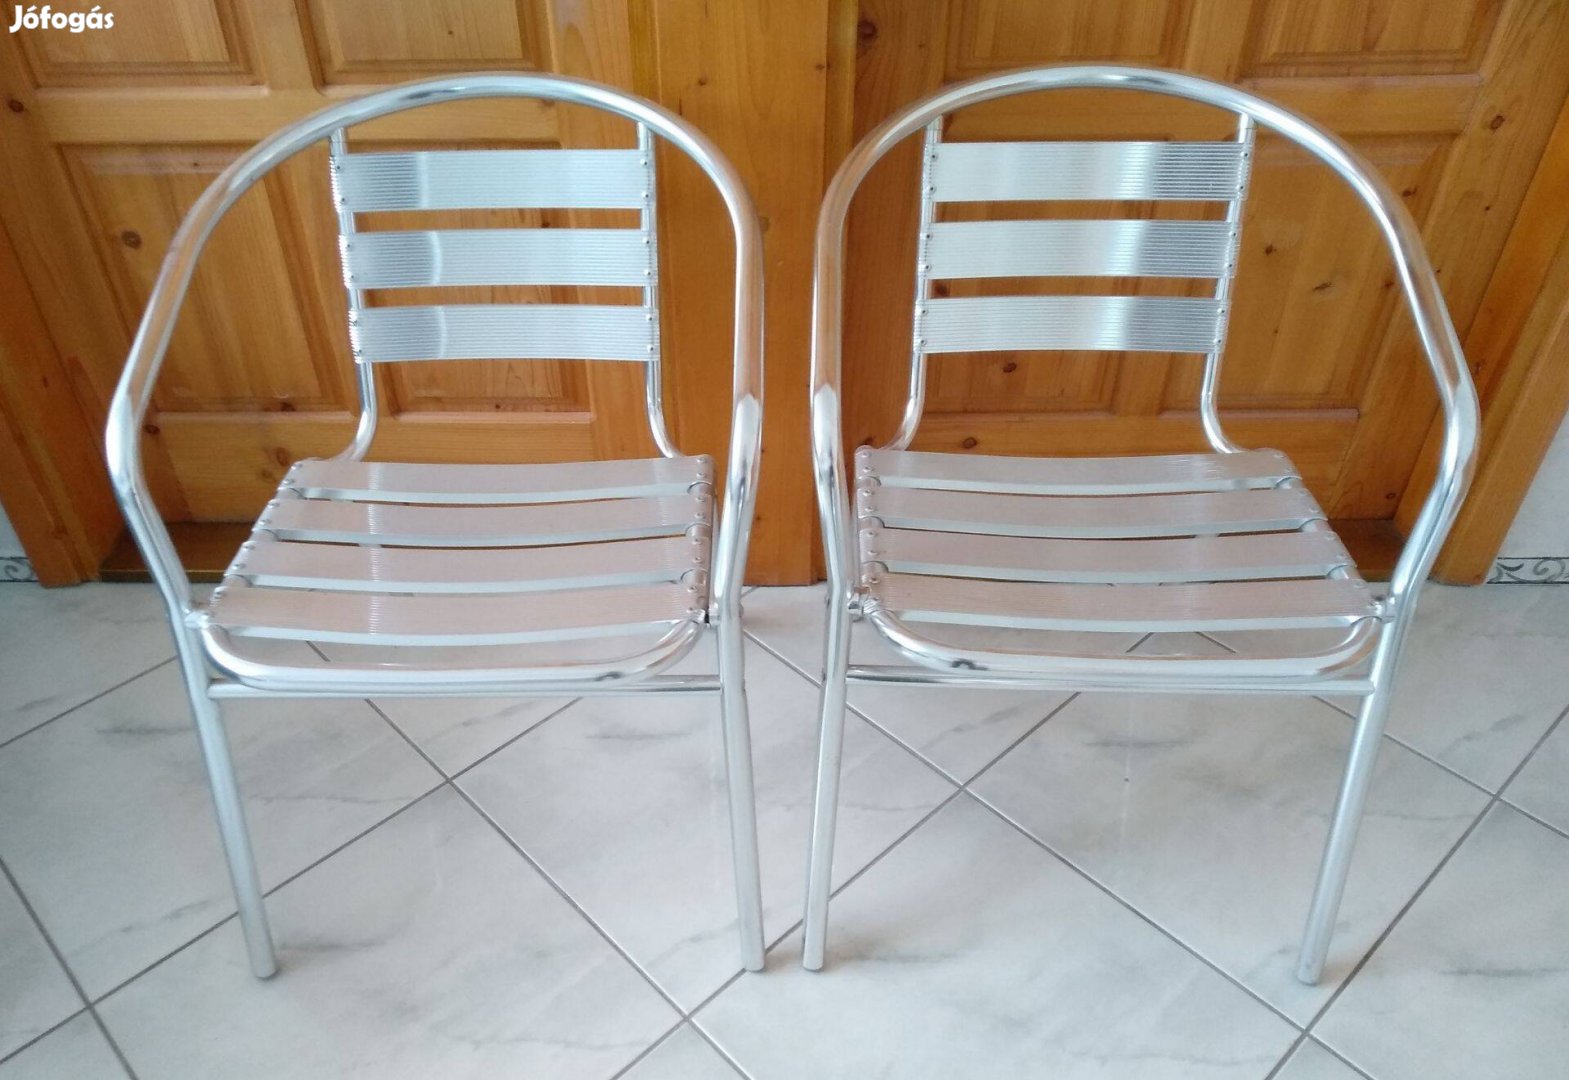 2 db alumínium étkező szék, német gyártmány, hibátlan, akár teraszra i